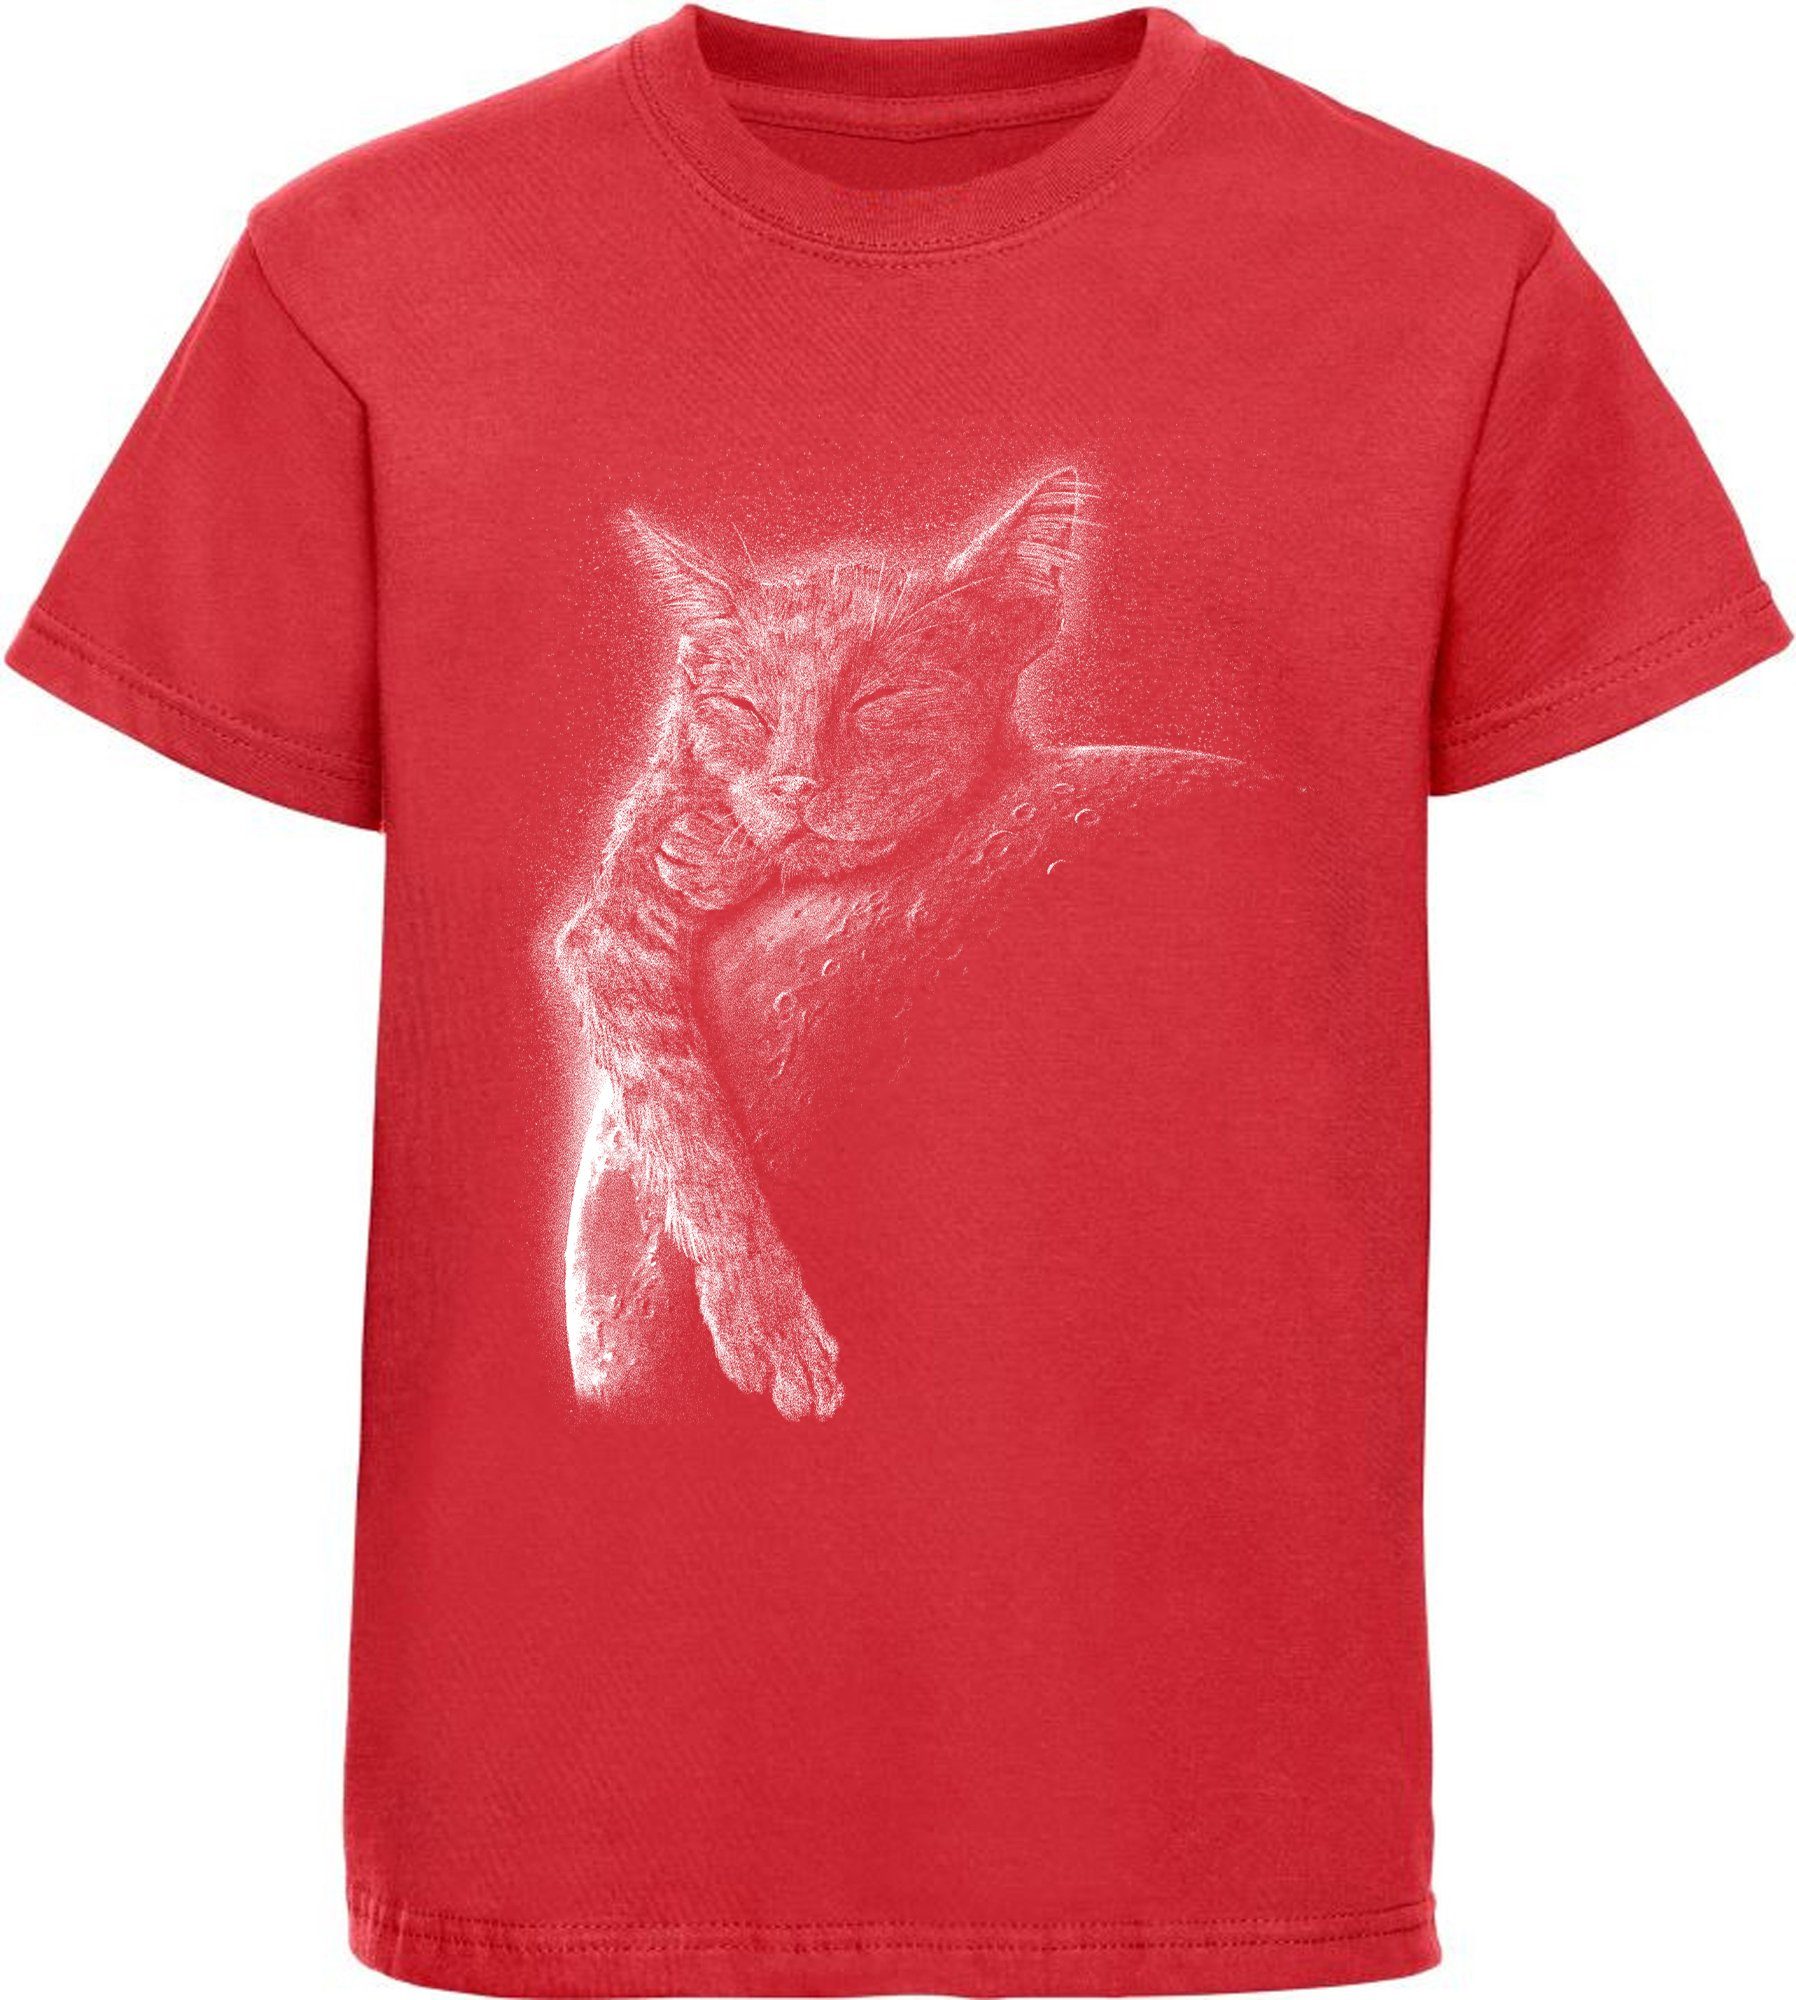 MyDesign24 Print-Shirt bedrucktes Mädchen T-Shirt Katze schlafend am Mond Baumwollshirt mit Aufdruck, schwarz, rot, i123